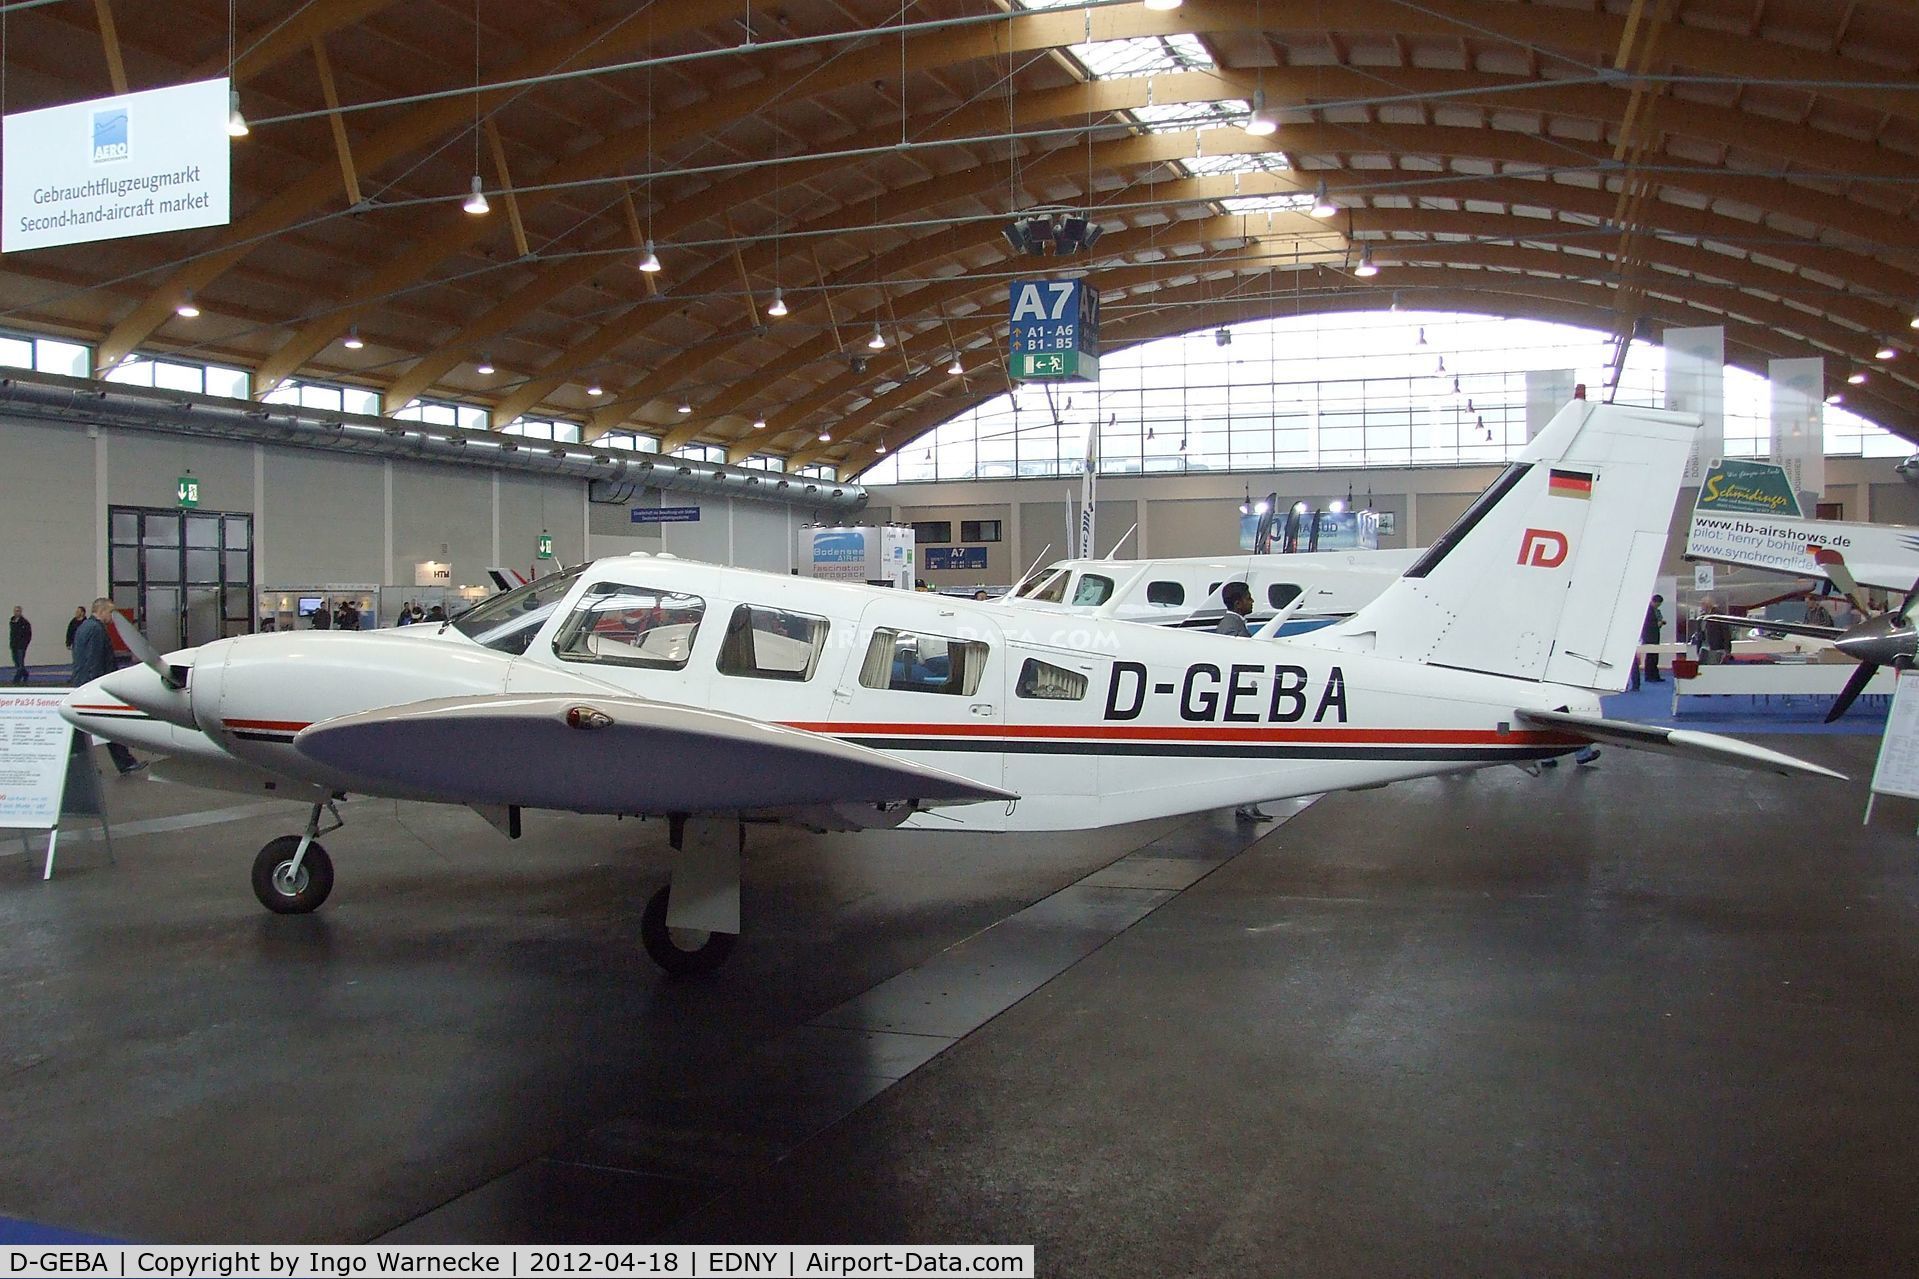 D-GEBA, 1976 Piper PA-34-200T II C/N 347670179, Piper PA-34-200T Seneca II at the AERO 2012, Friedrichshafen